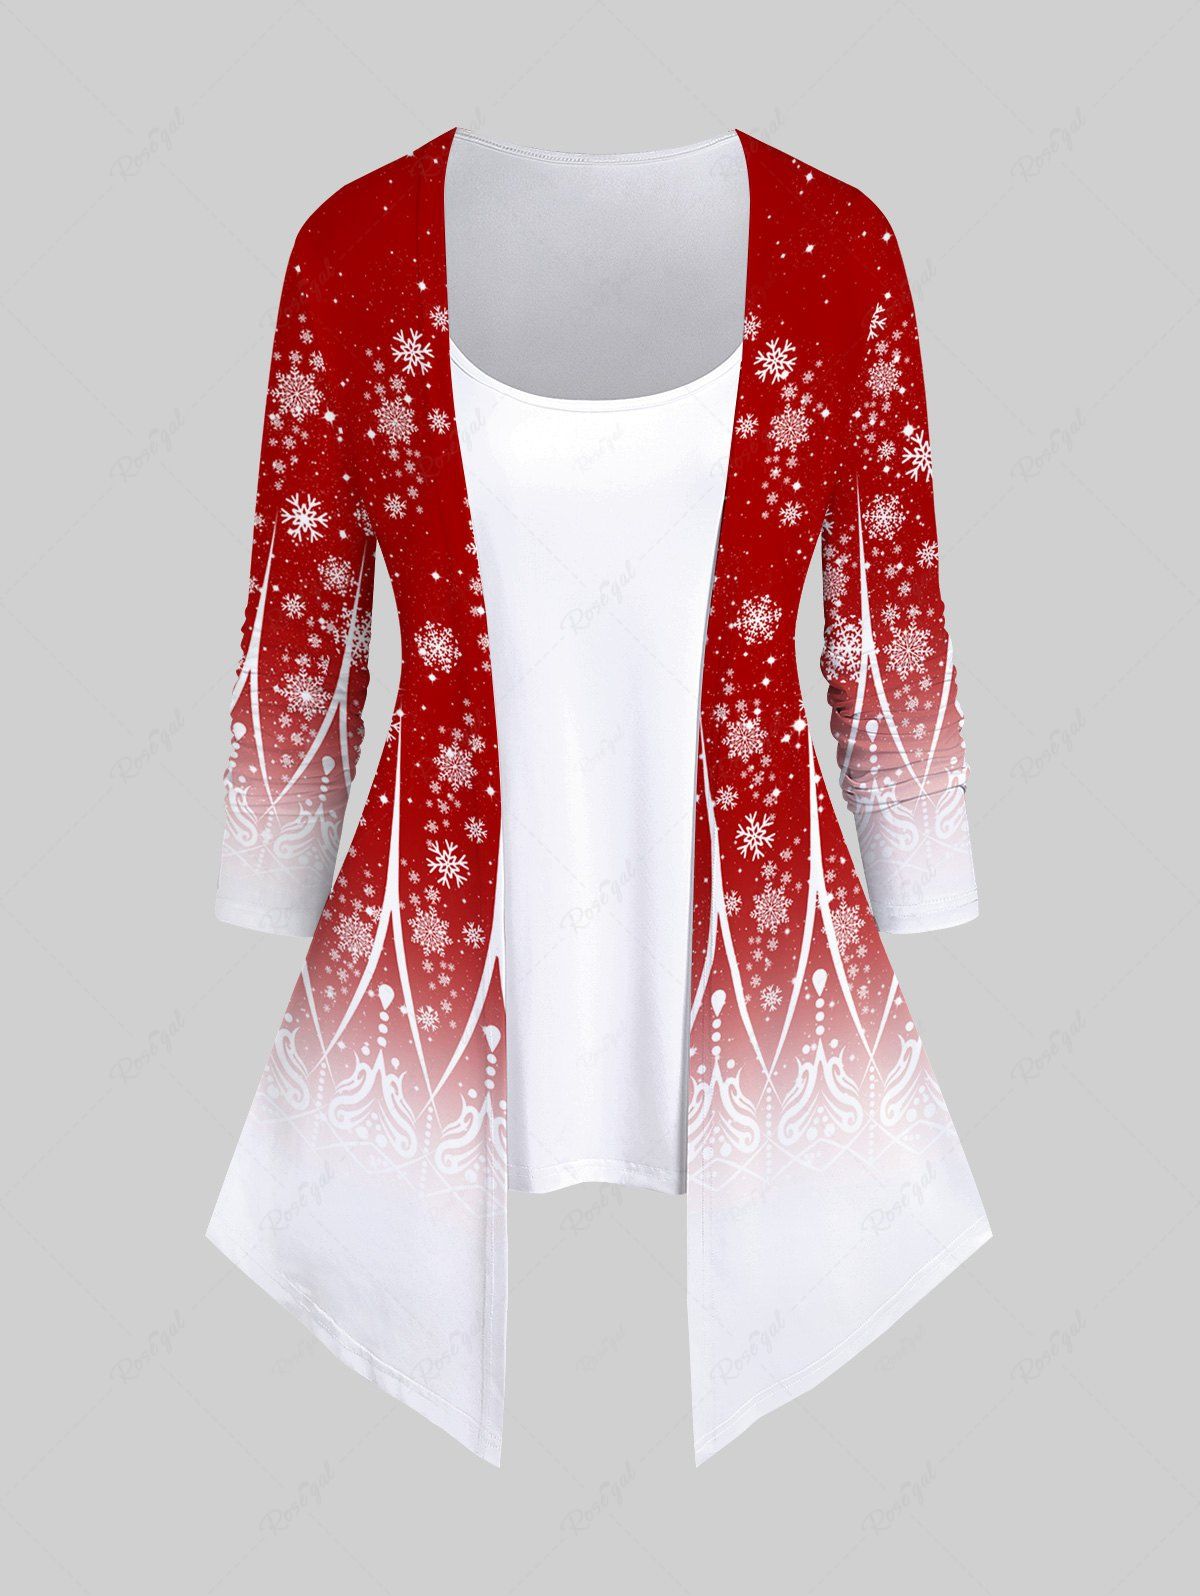 T-shirt Imprimé Figure Floral Entrecroisé Grande Taille Rouge 5X